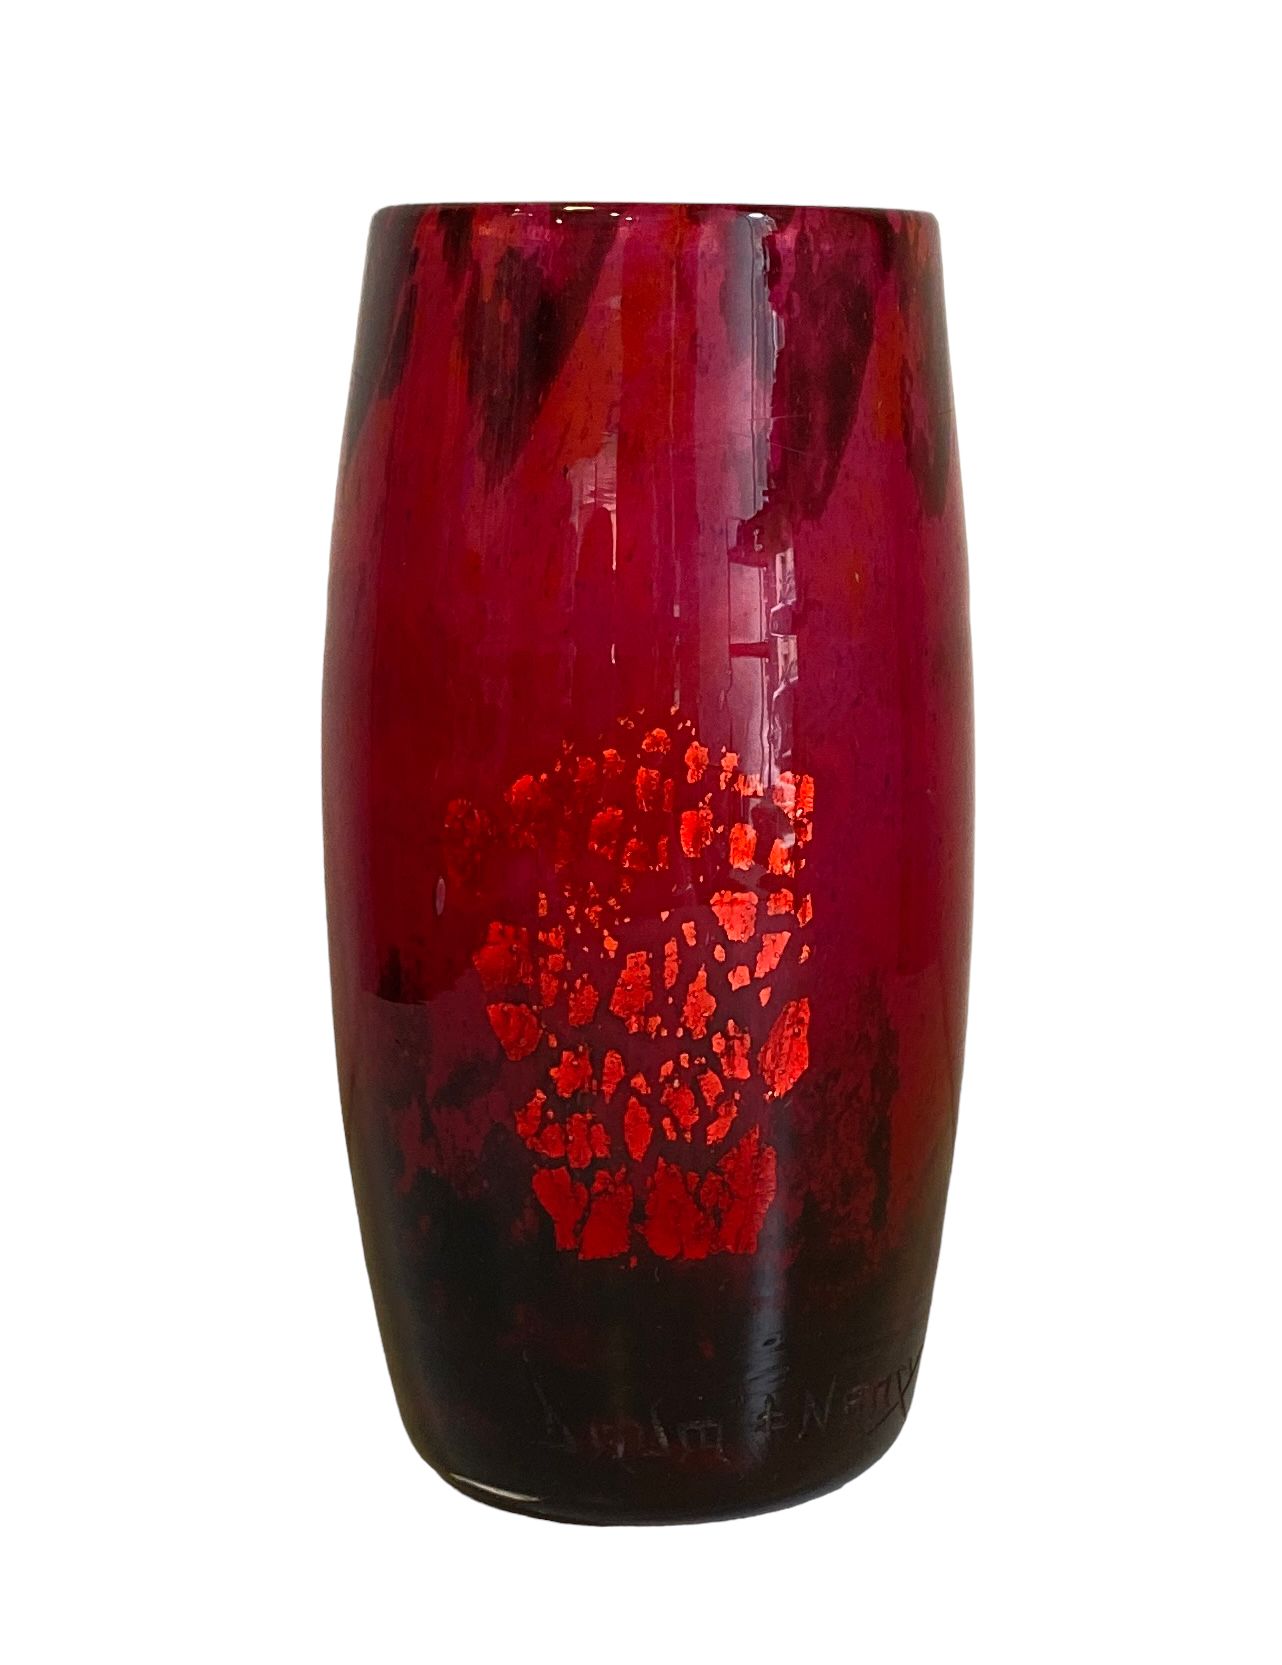 Null Daum Nancy
Un vase en verre soufflé marmoréen dans les tons roses, rouges e&hellip;